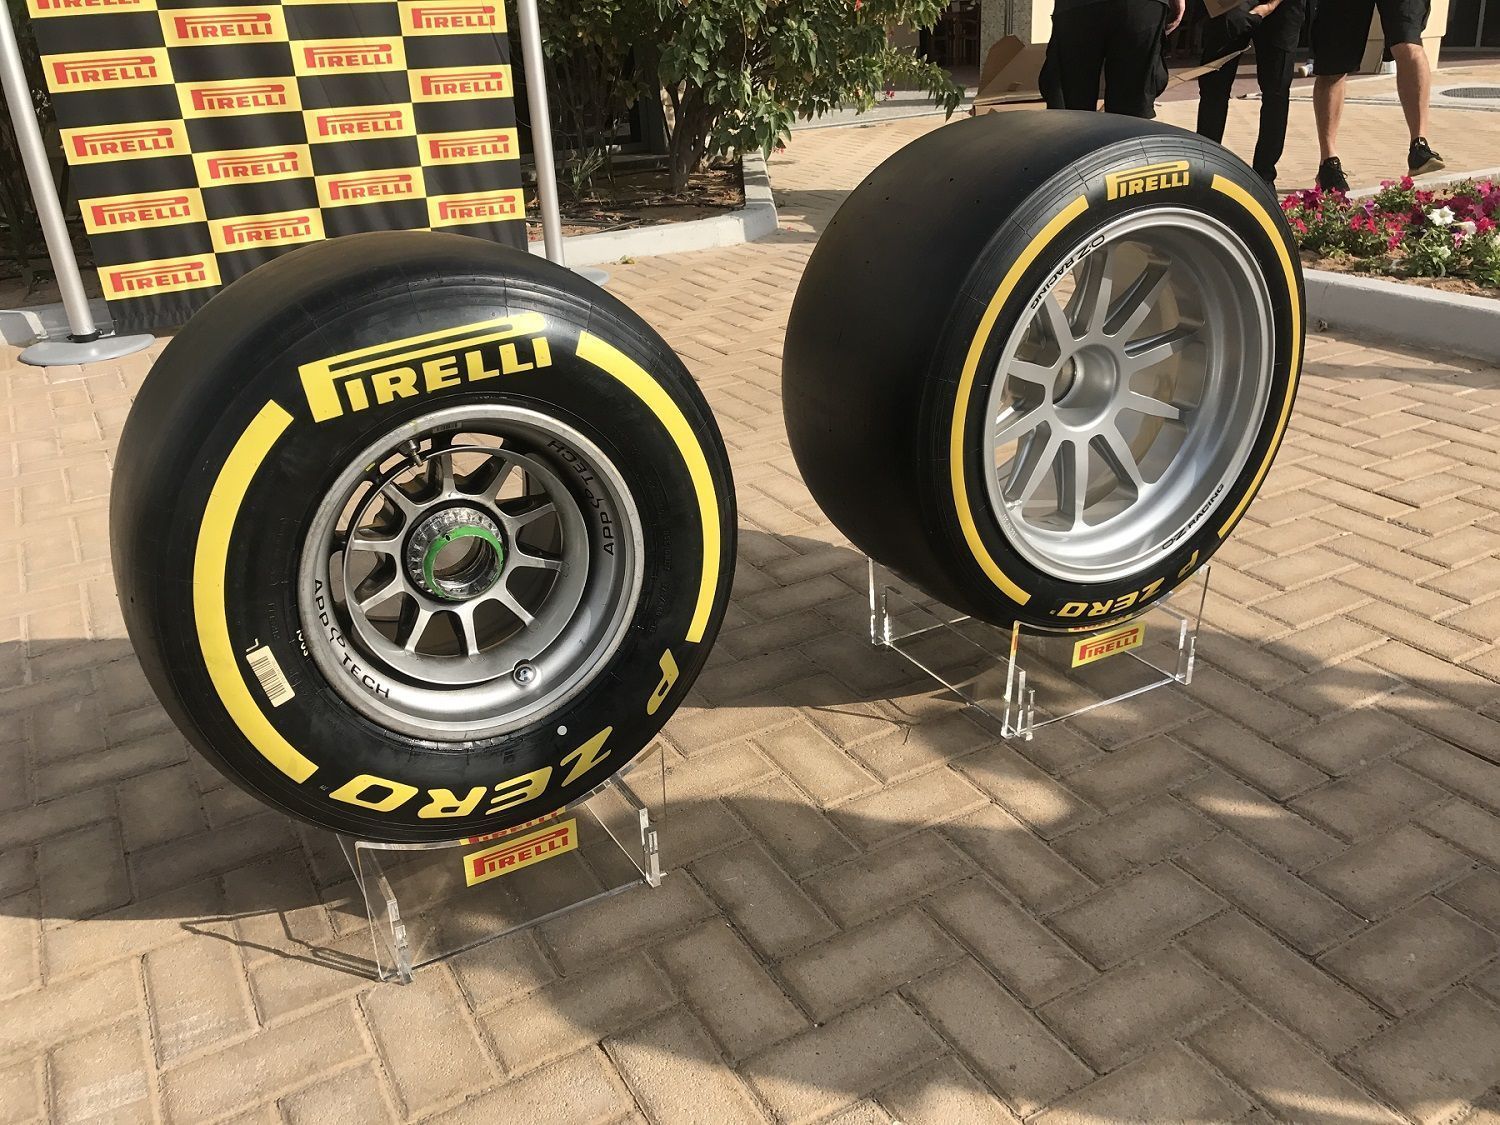 Pirelli, 2018 v 2021